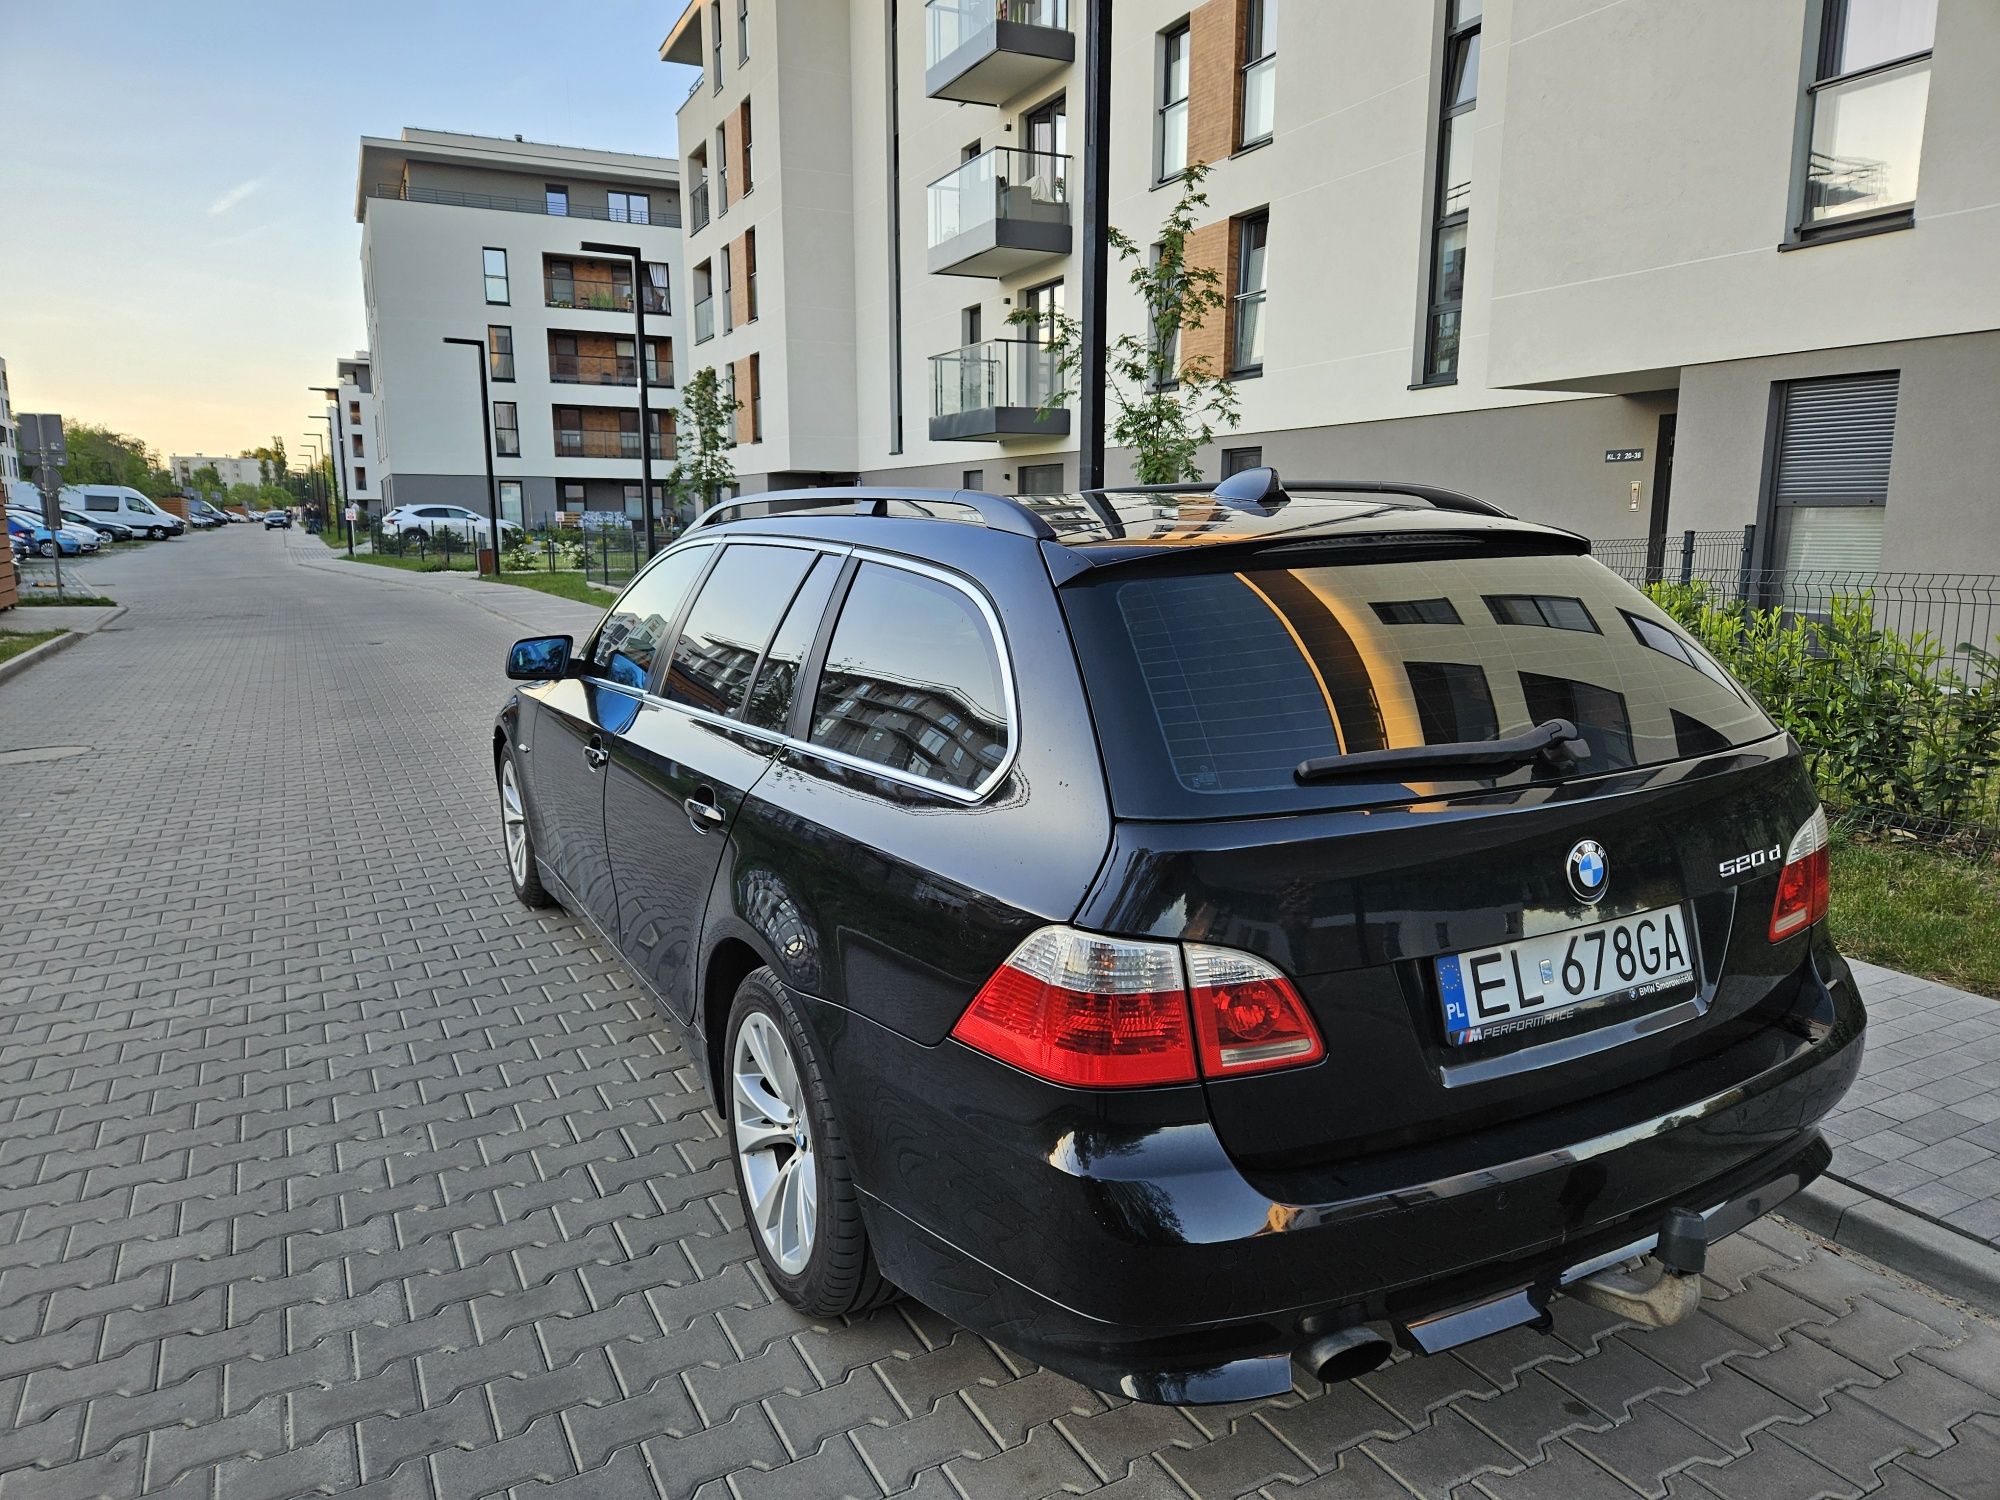 BMW 520d E61 M47, od 2009r w  jednej rodzinie